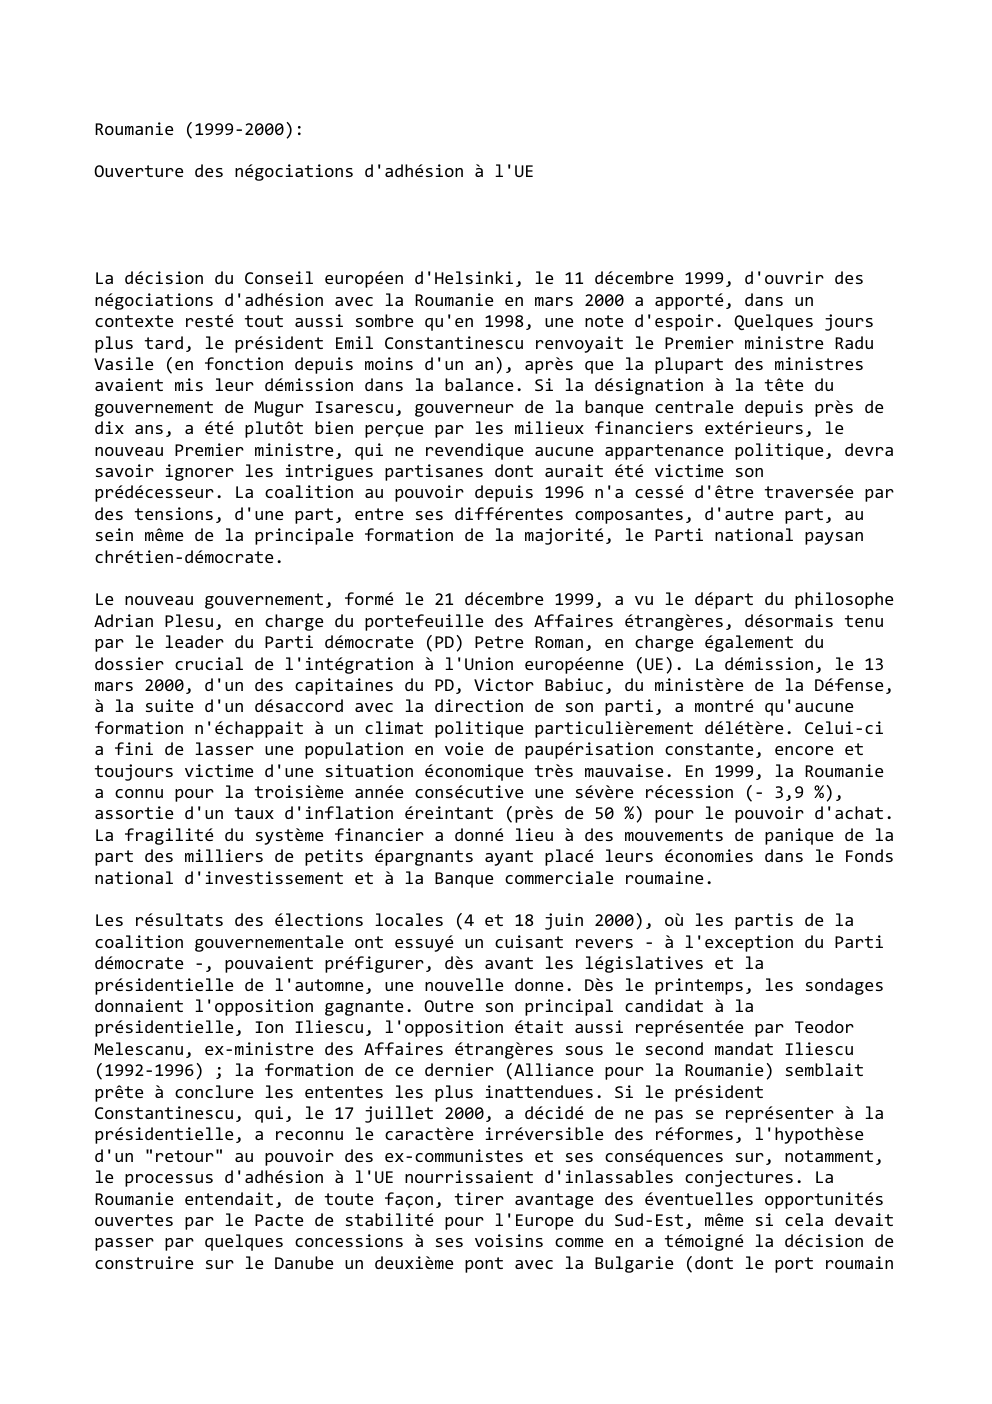 Prévisualisation du document Roumanie (1999-2000):
Ouverture des négociations d'adhésion à l'UE

La décision du Conseil européen d'Helsinki, le 11 décembre 1999, d'ouvrir des...